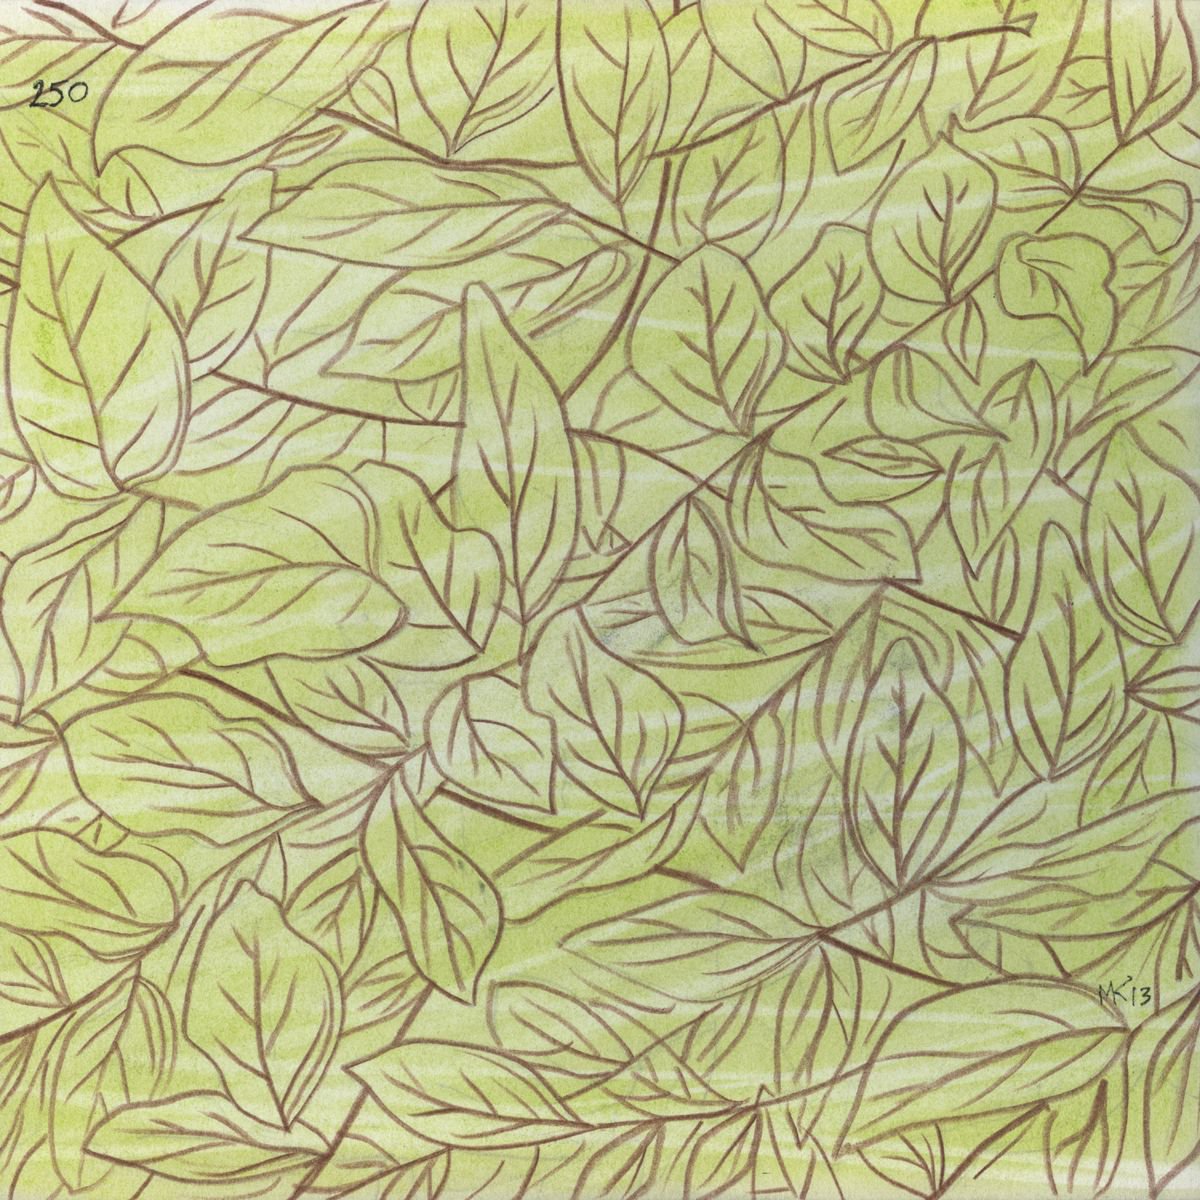 Foliage pattern, day 250 by MARKOS KAMPANIS